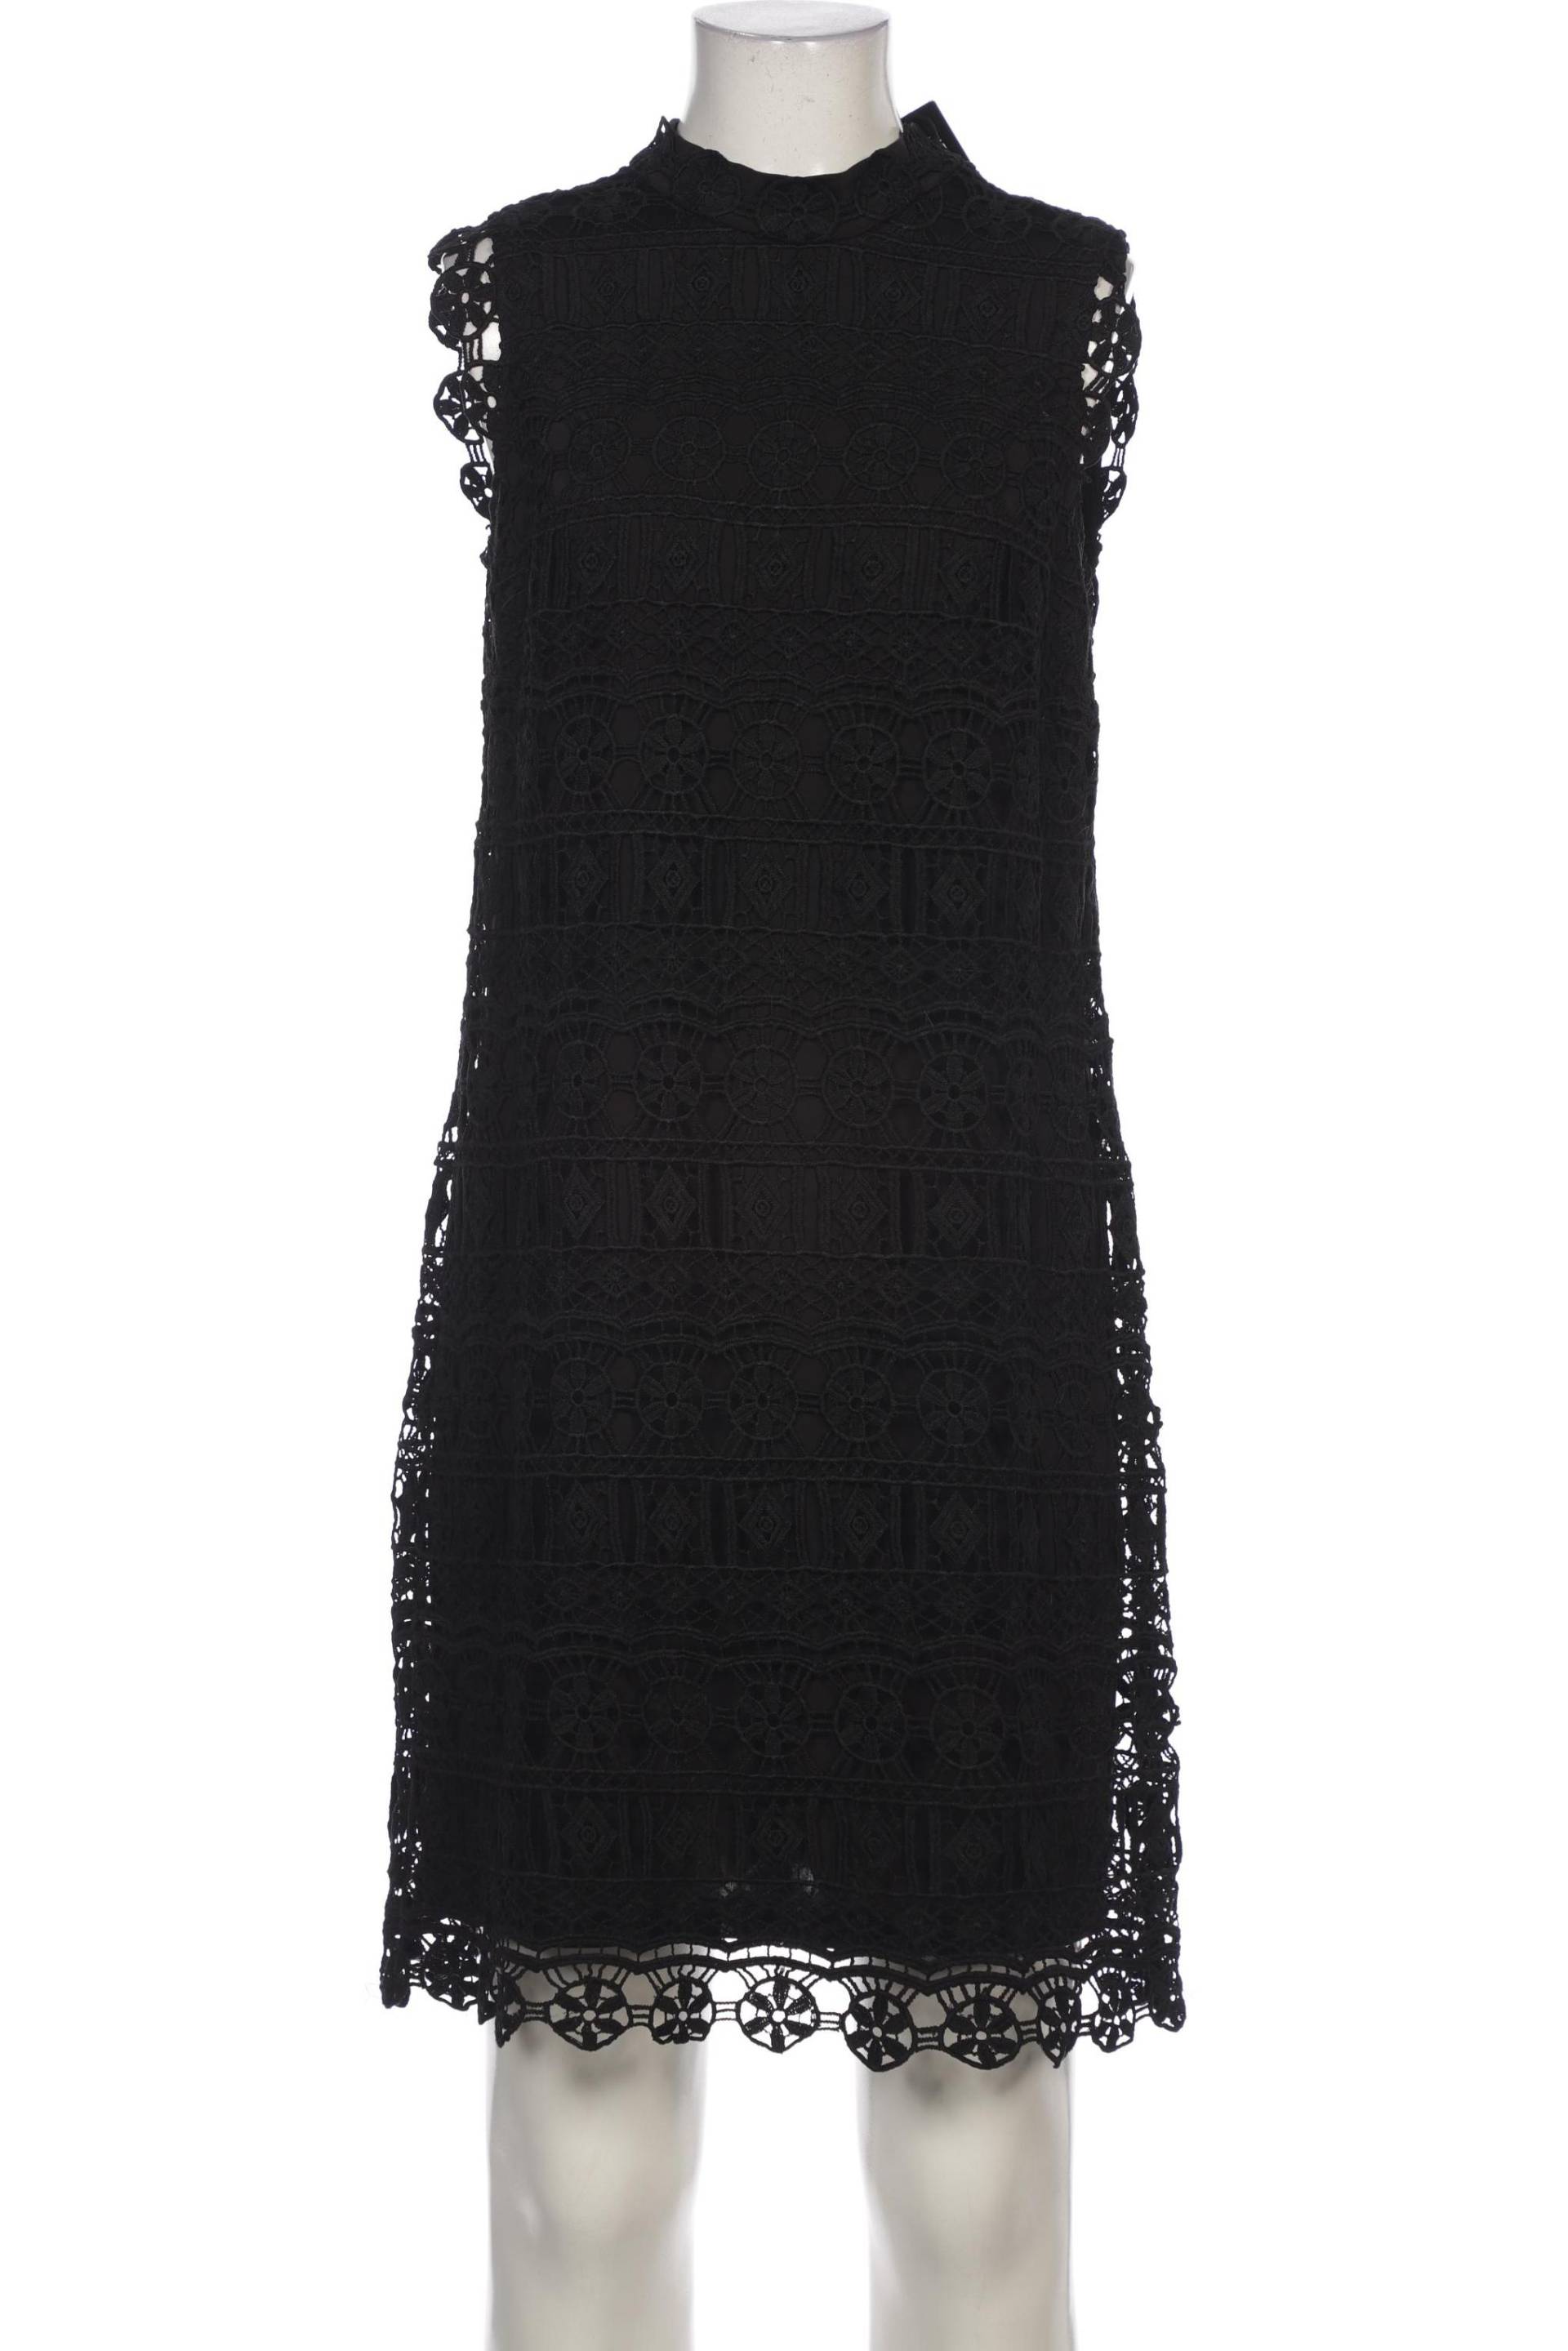 Ana Alcazar Damen Kleid, schwarz, Gr. 36 von Ana Alcazar